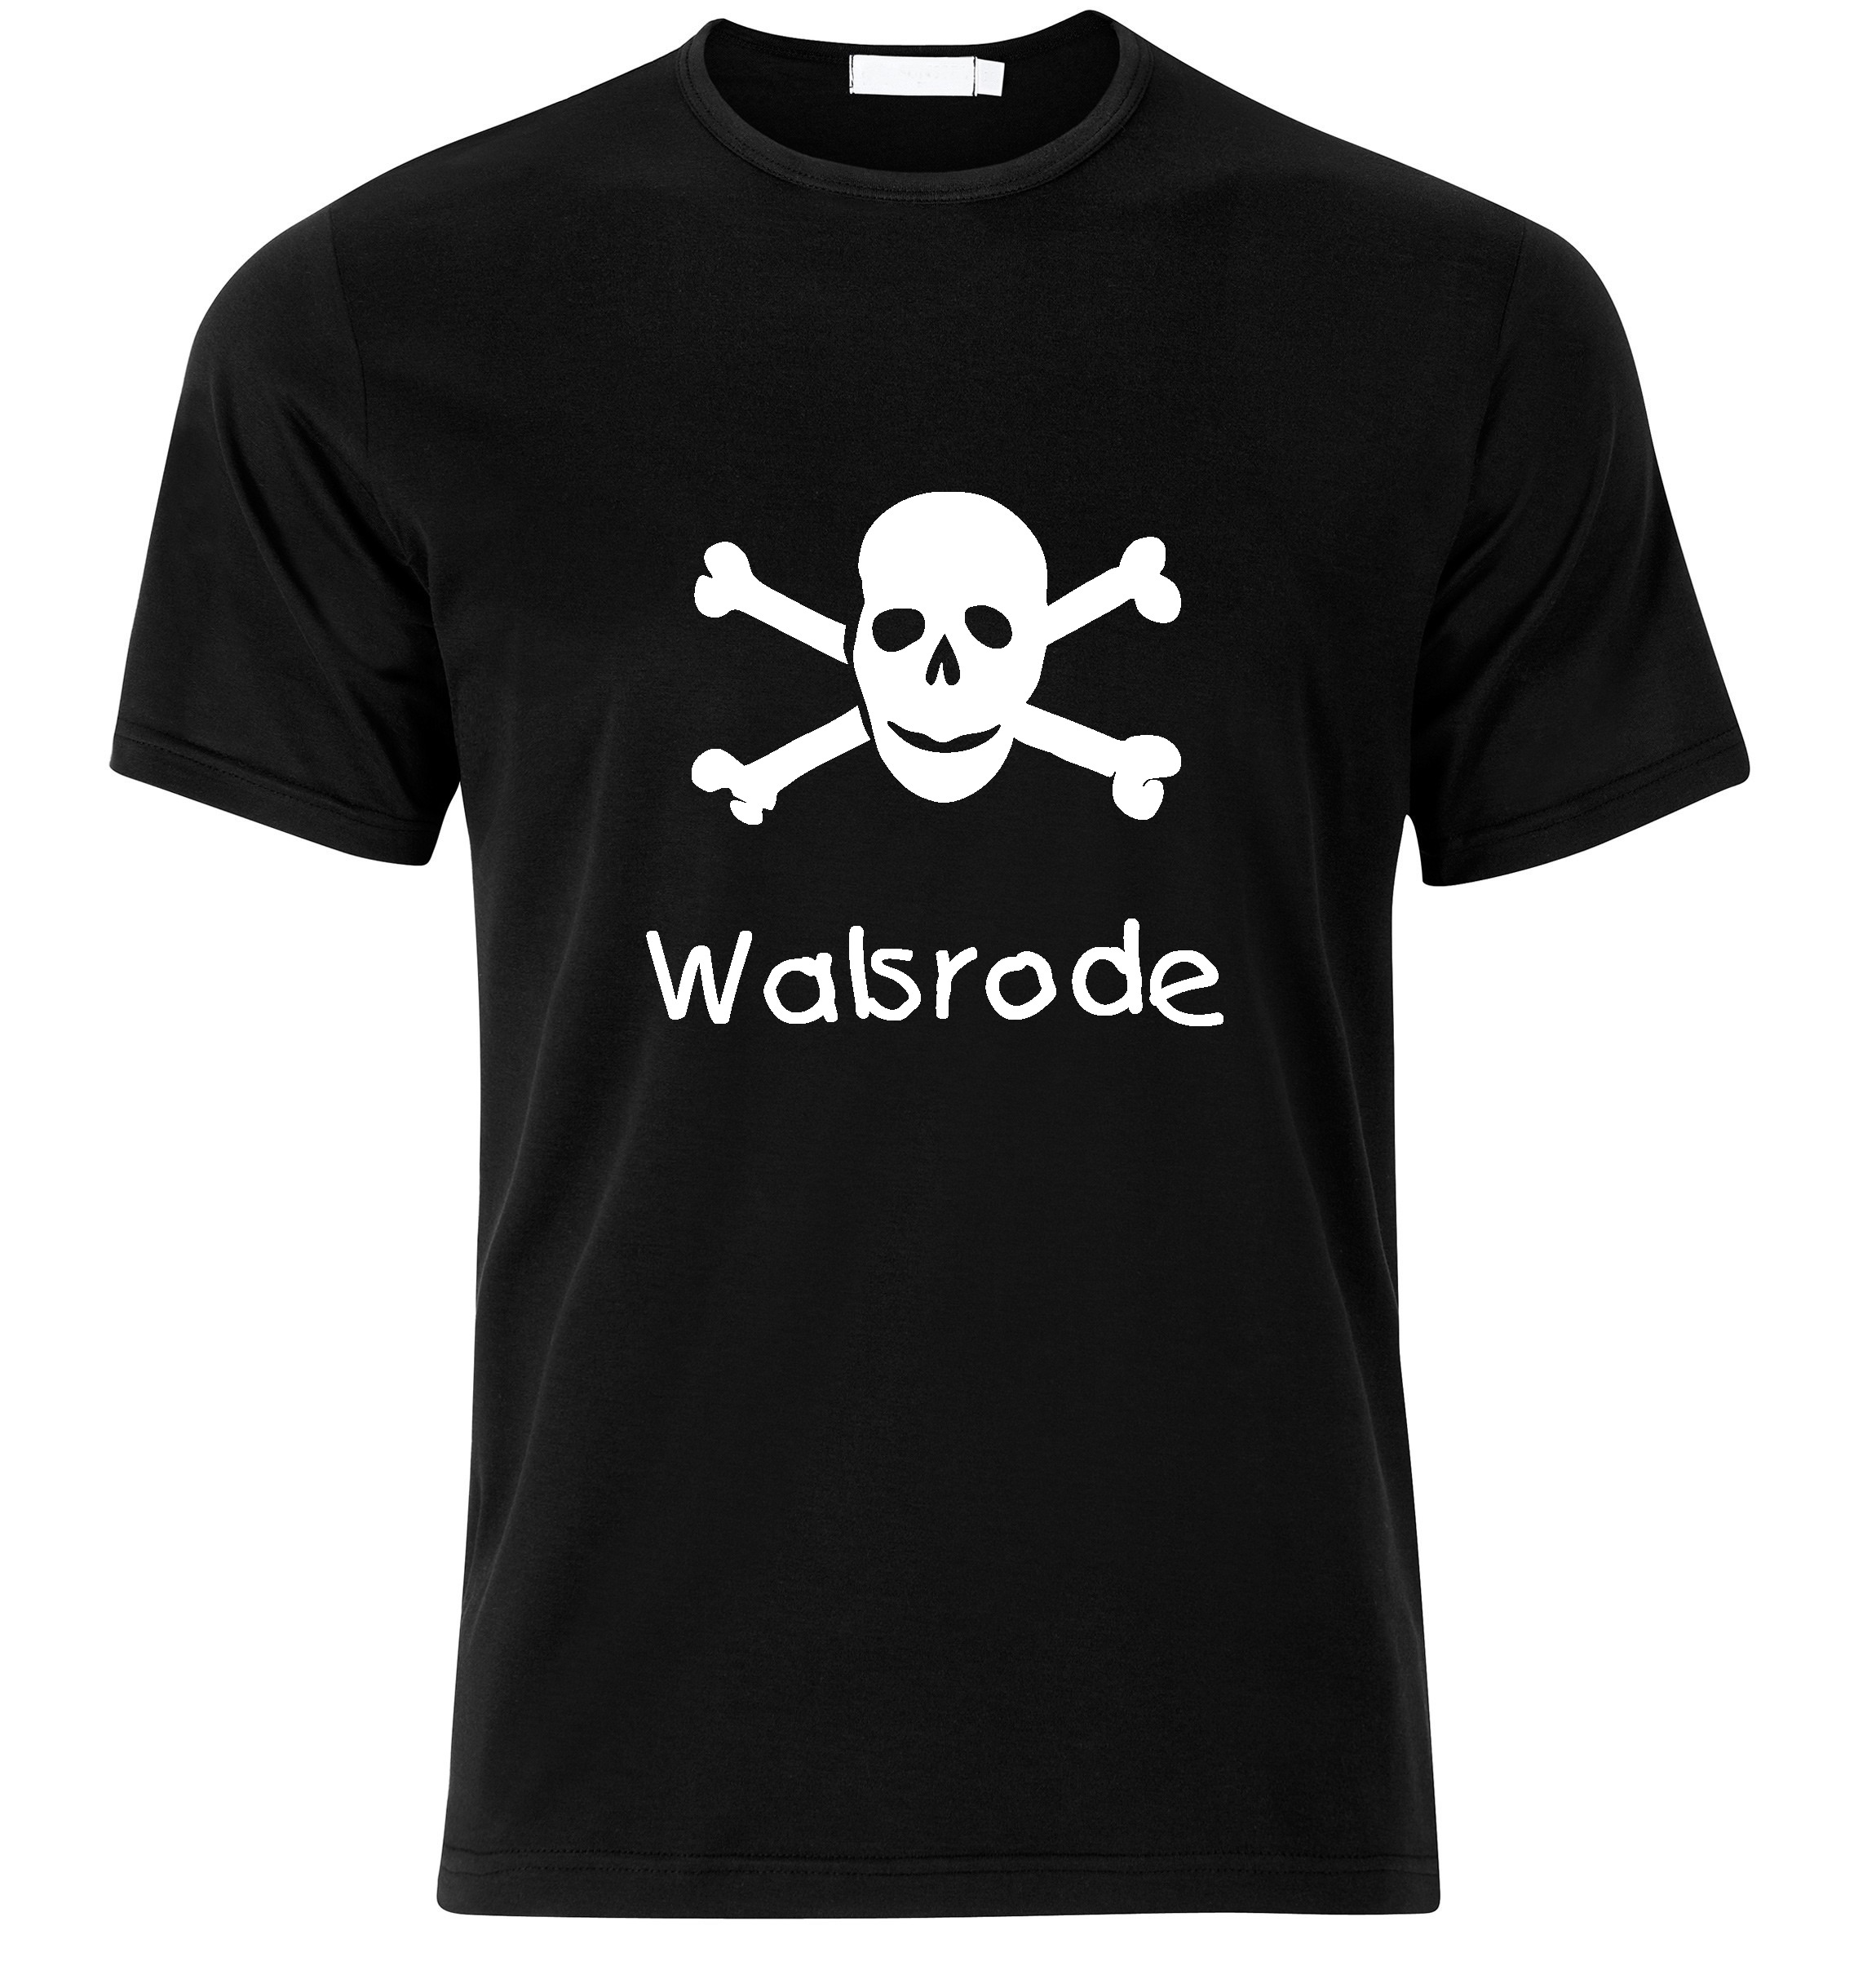 T-Shirt Walsrode Jolly Roger, Totenkopf